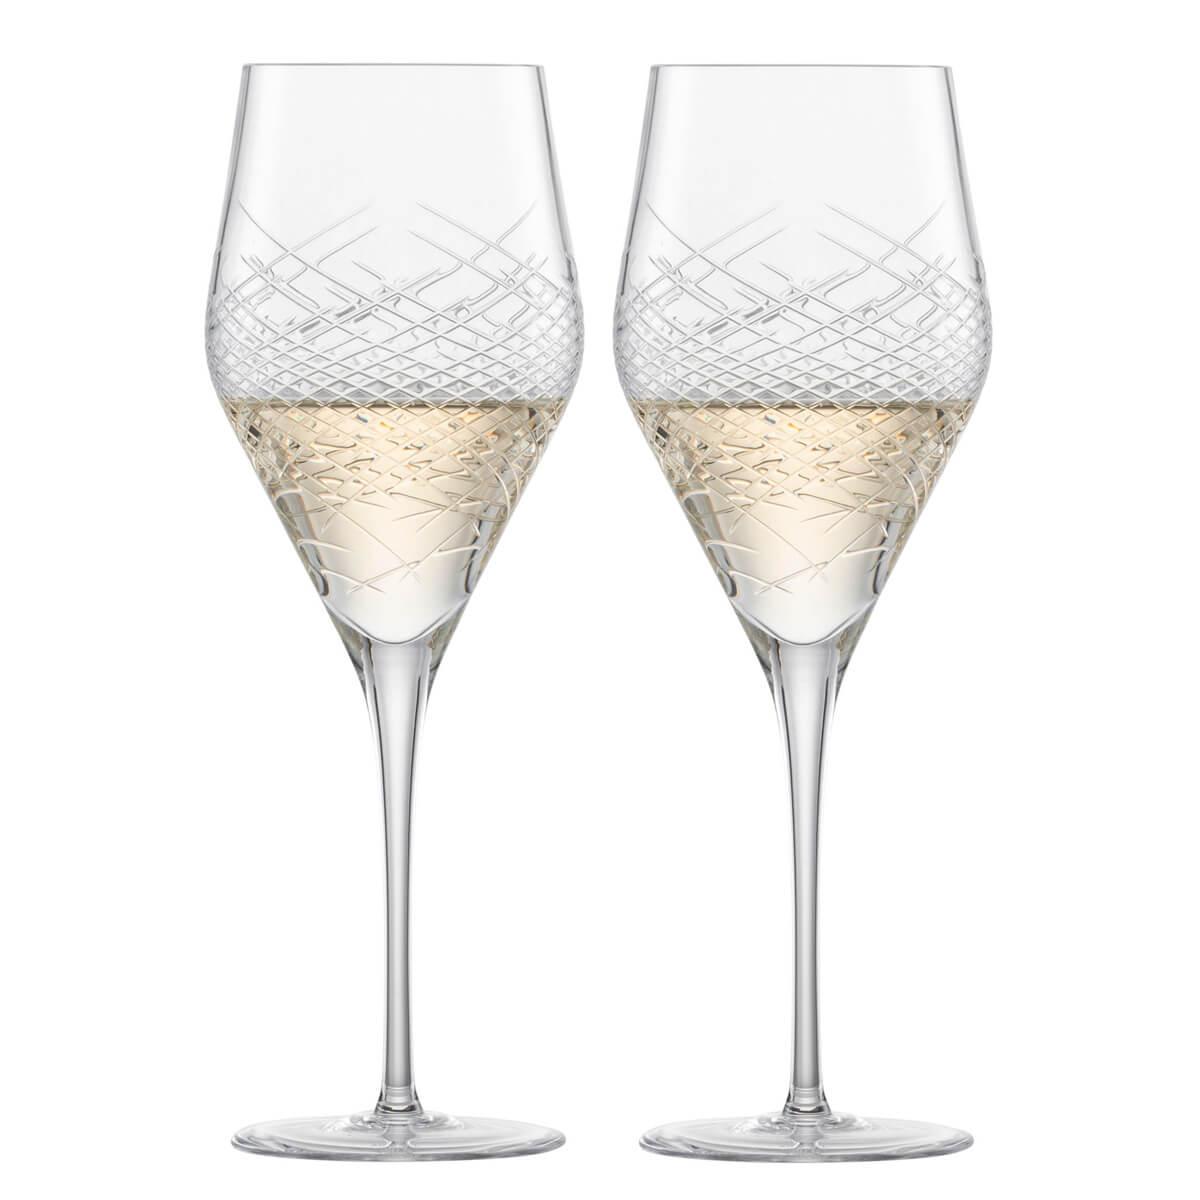 (一對價)358cc【德國蔡司Schott Zwiesel手工杯】Hommage系列 Comète對杯 頂級結婚水晶祝杯 紅酒杯 - MSA玻璃雕刻